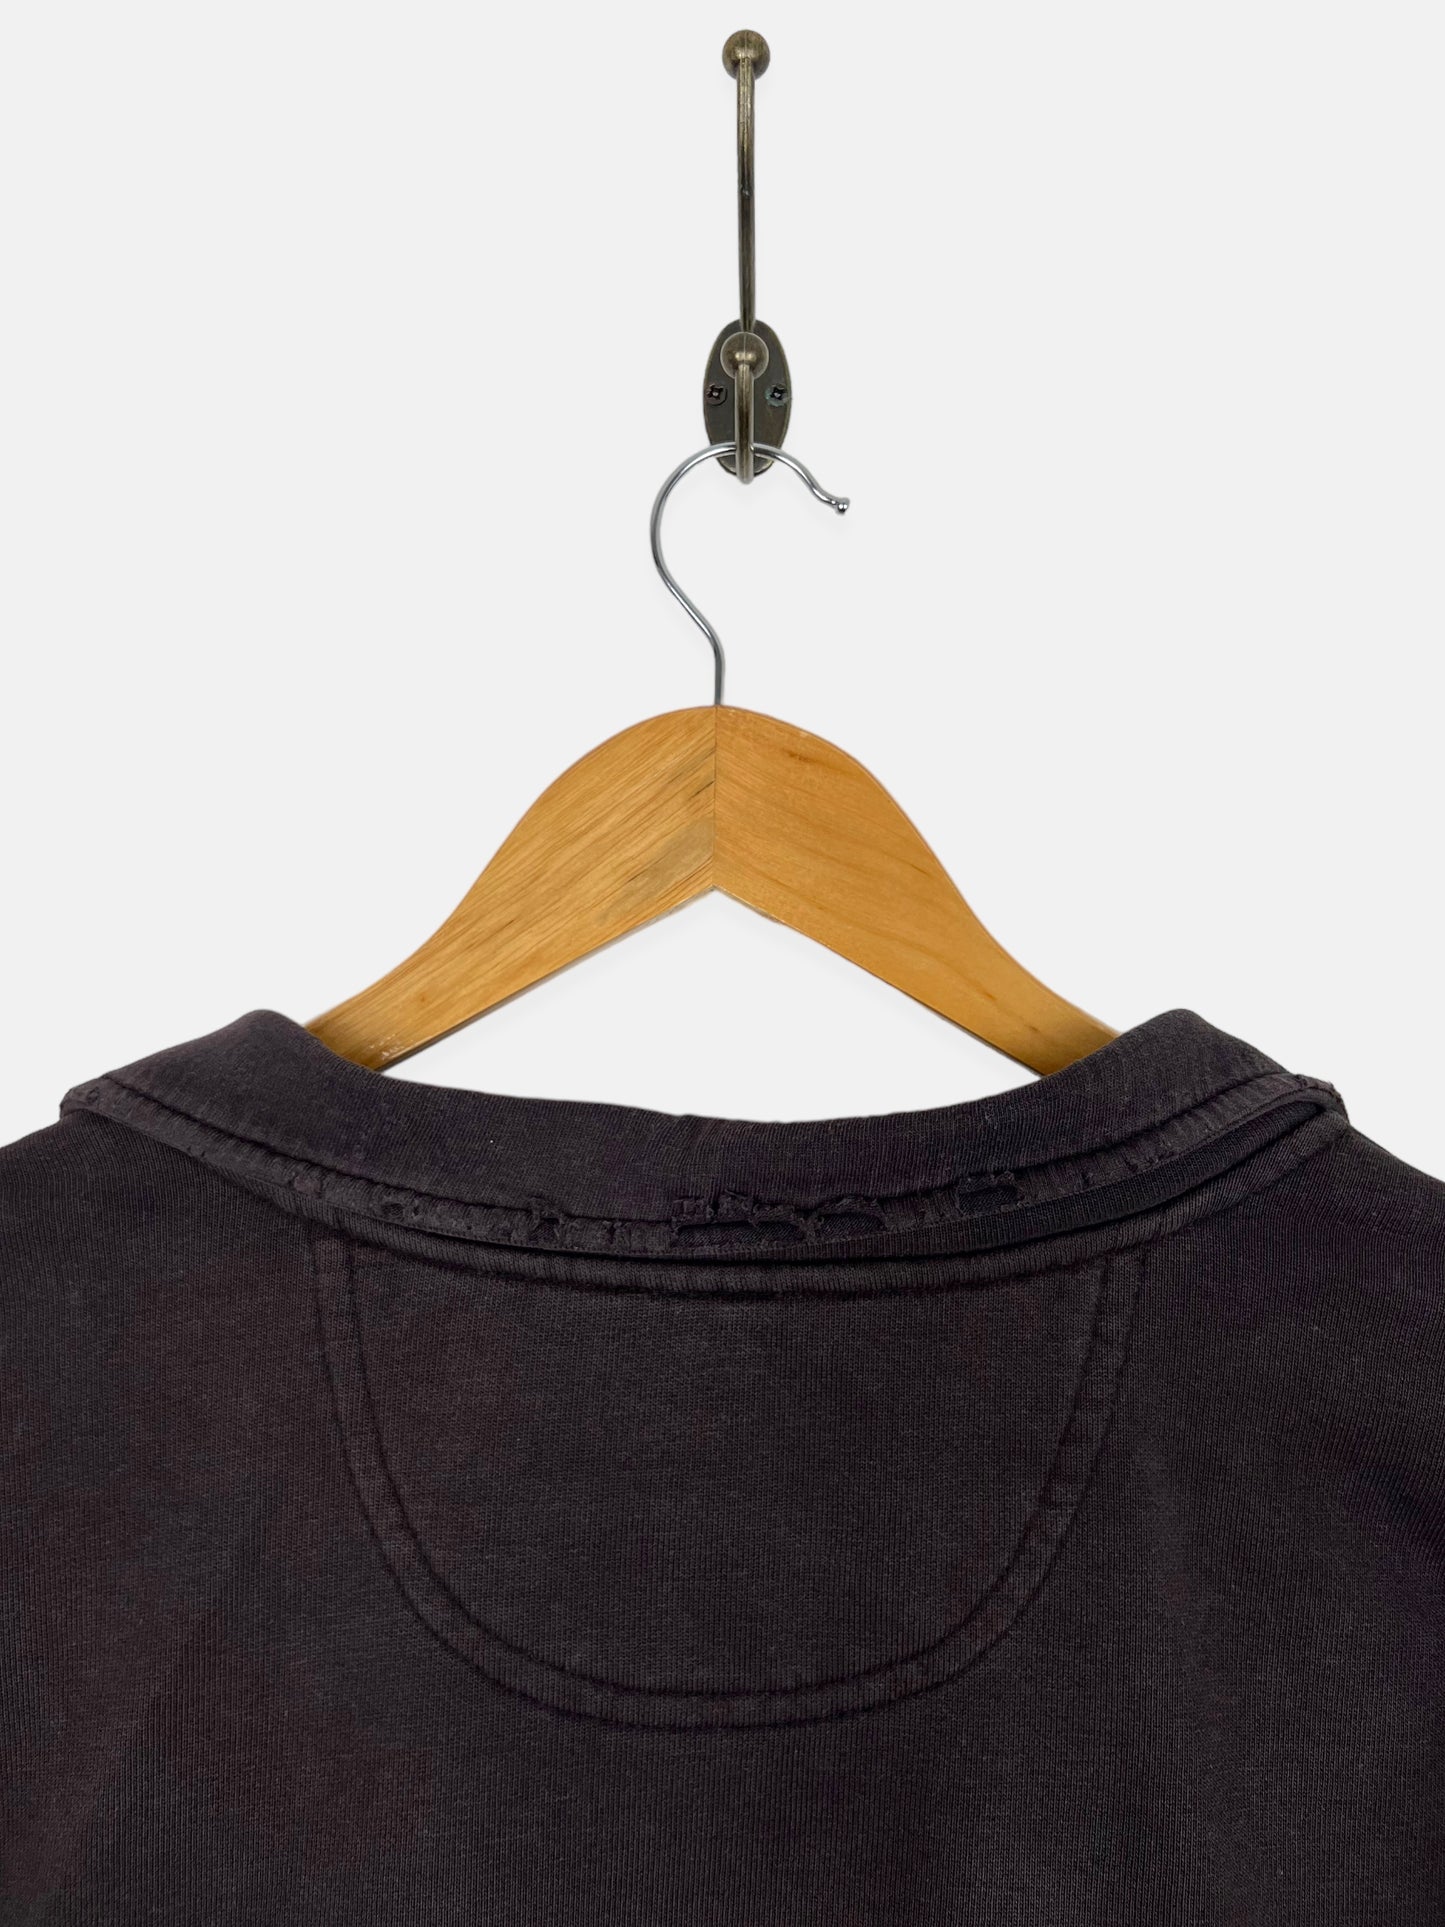 90's Carhartt Embroidered Vintage Quarterzip Sweatshirt Size 2XL